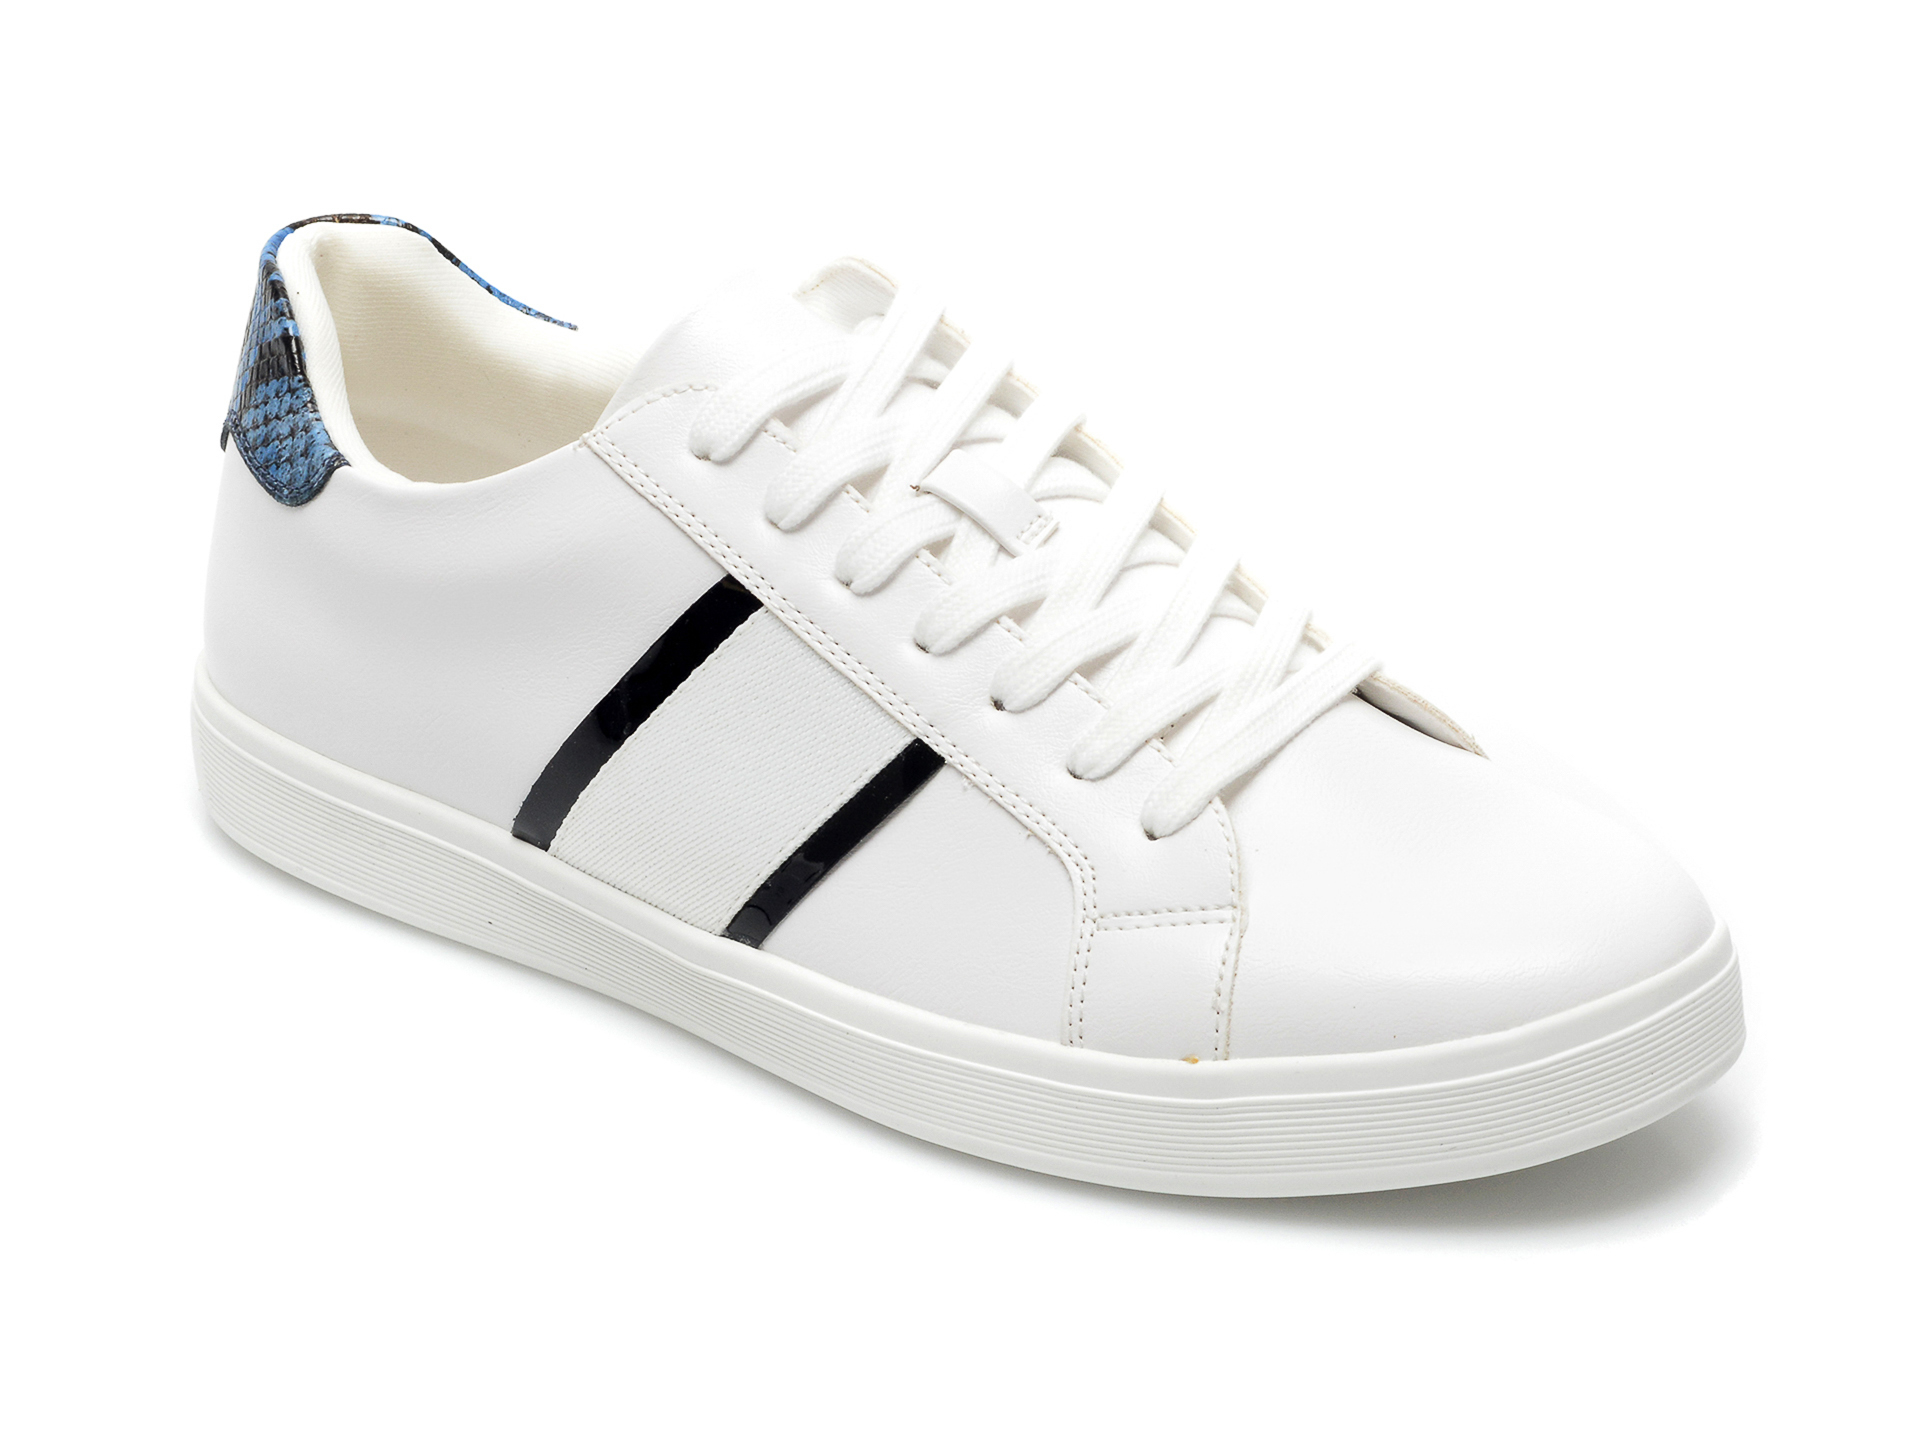 Pantofi sport ALDO albi, Cowien100, din piele ecologica